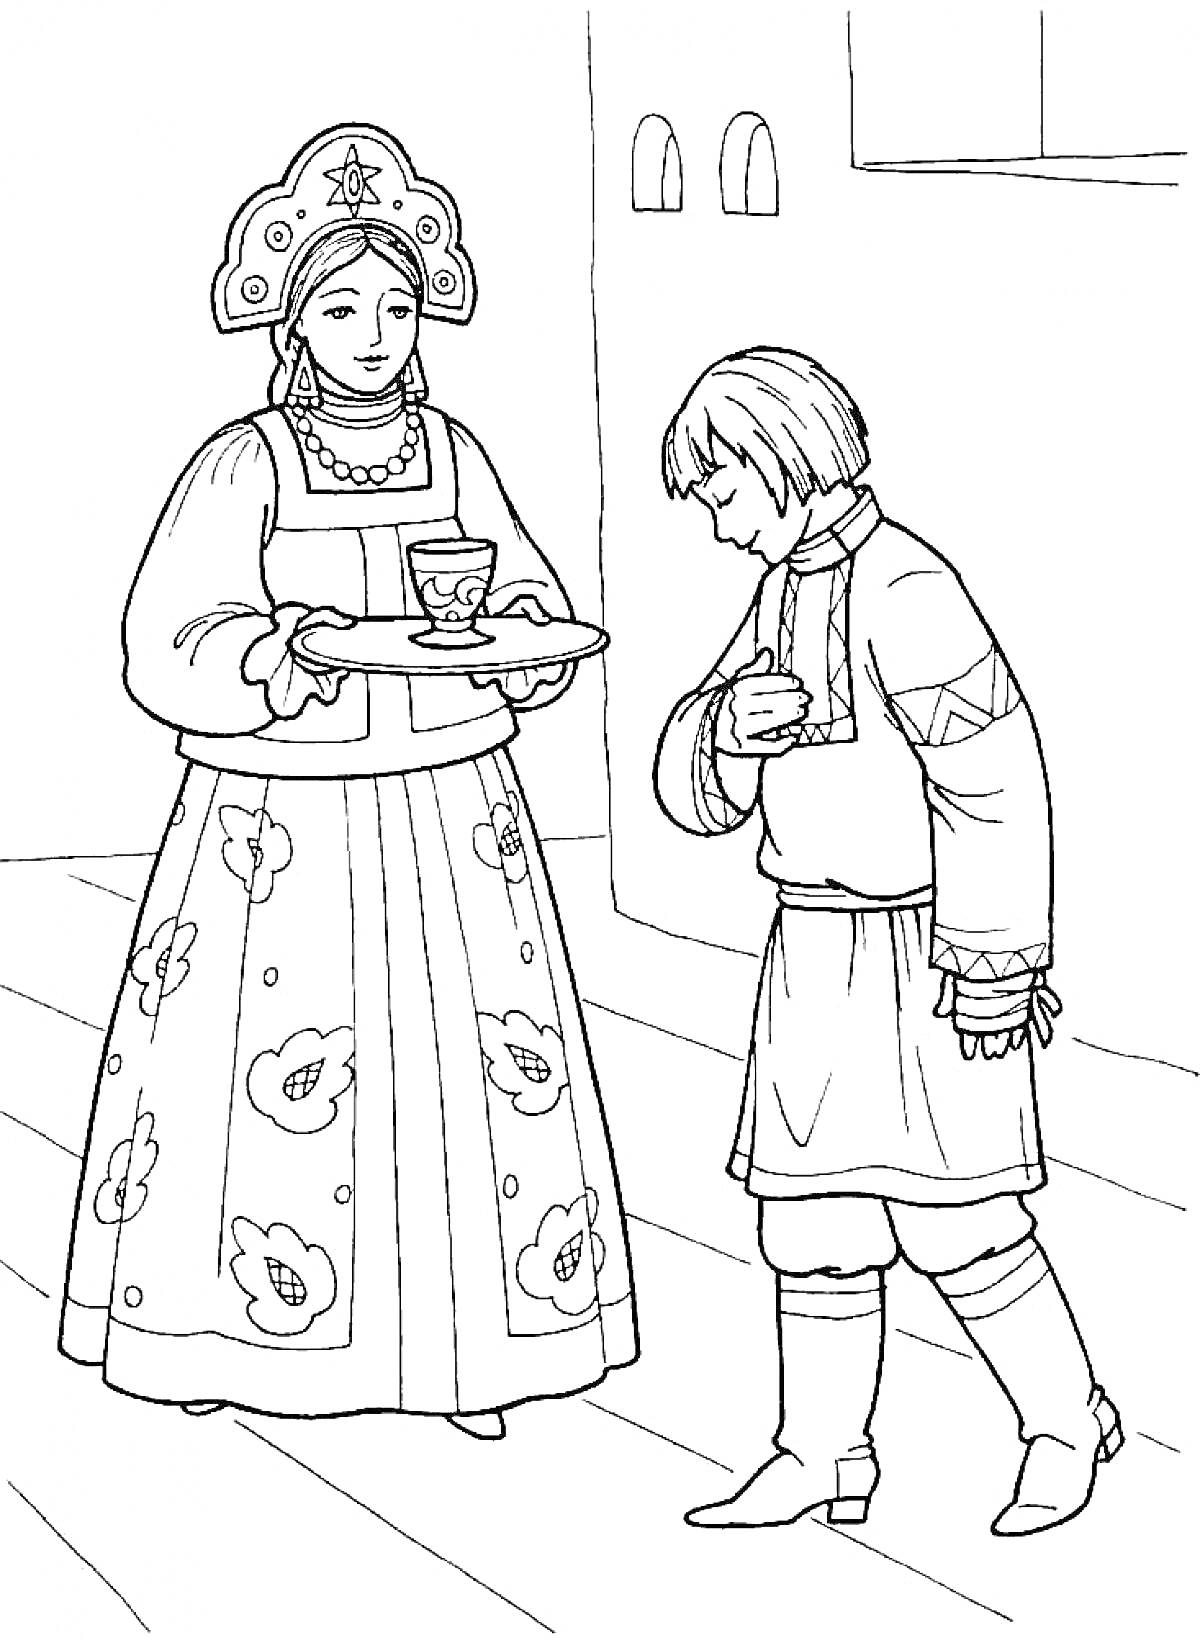 Раскраска Женщина в традиционной русской одежде с подносом, на котором стоит чашка, и юноша